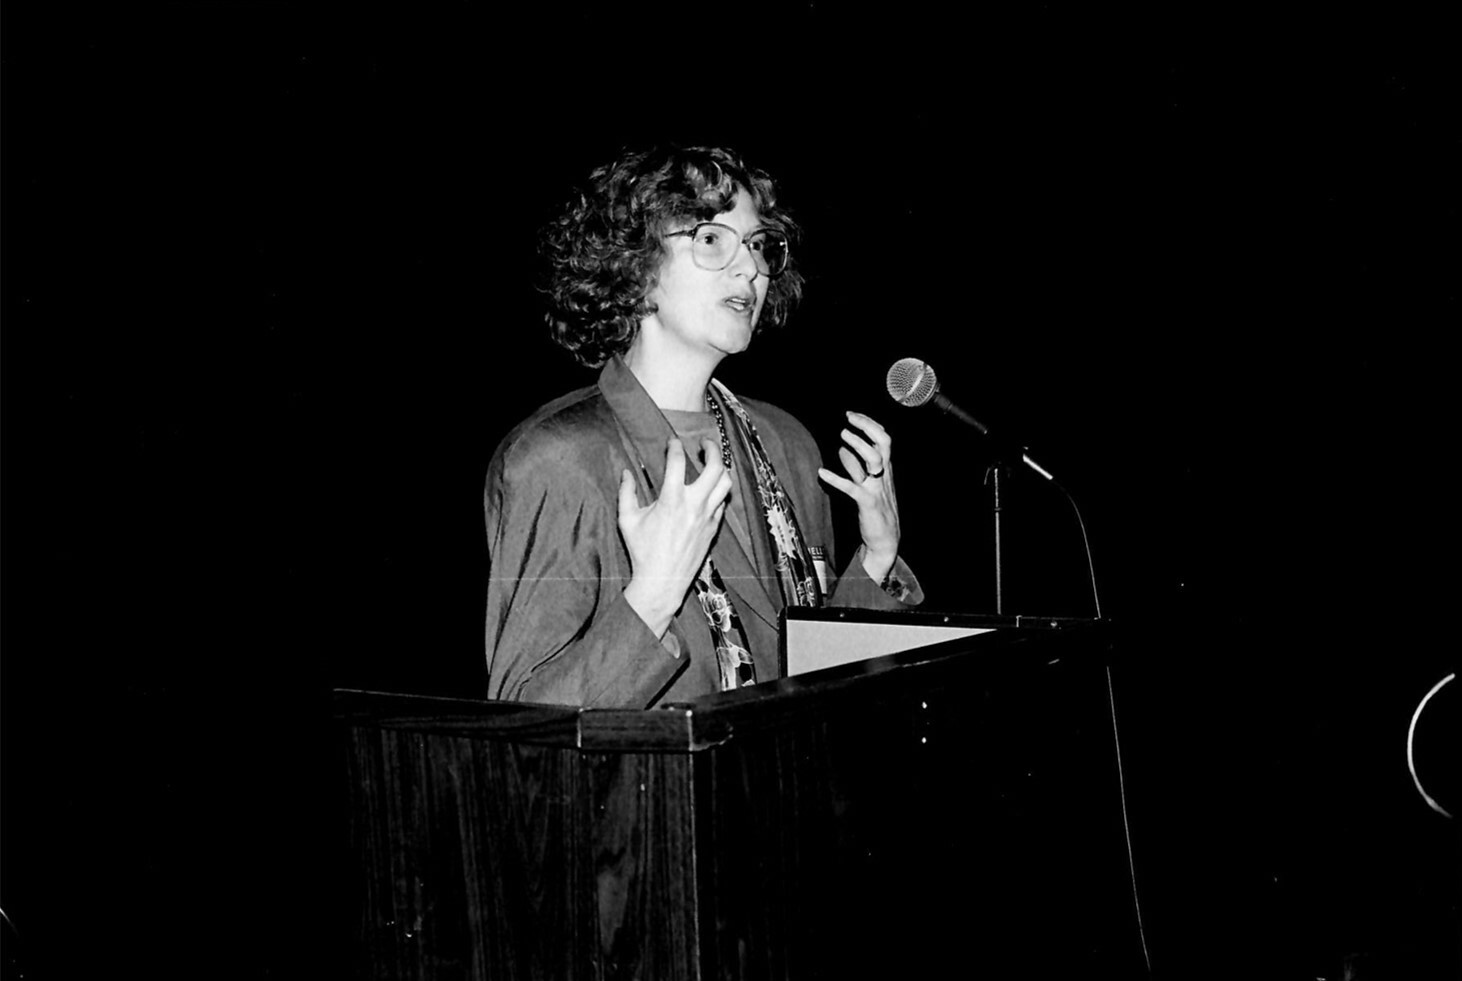 Activist Ellen Cassedy speaking at an event. In 1973, Cassedy and her friend Karen Nussbaum established the 9 to 5 National Association of Working Women. COURTESY ELLEN CASSEDY